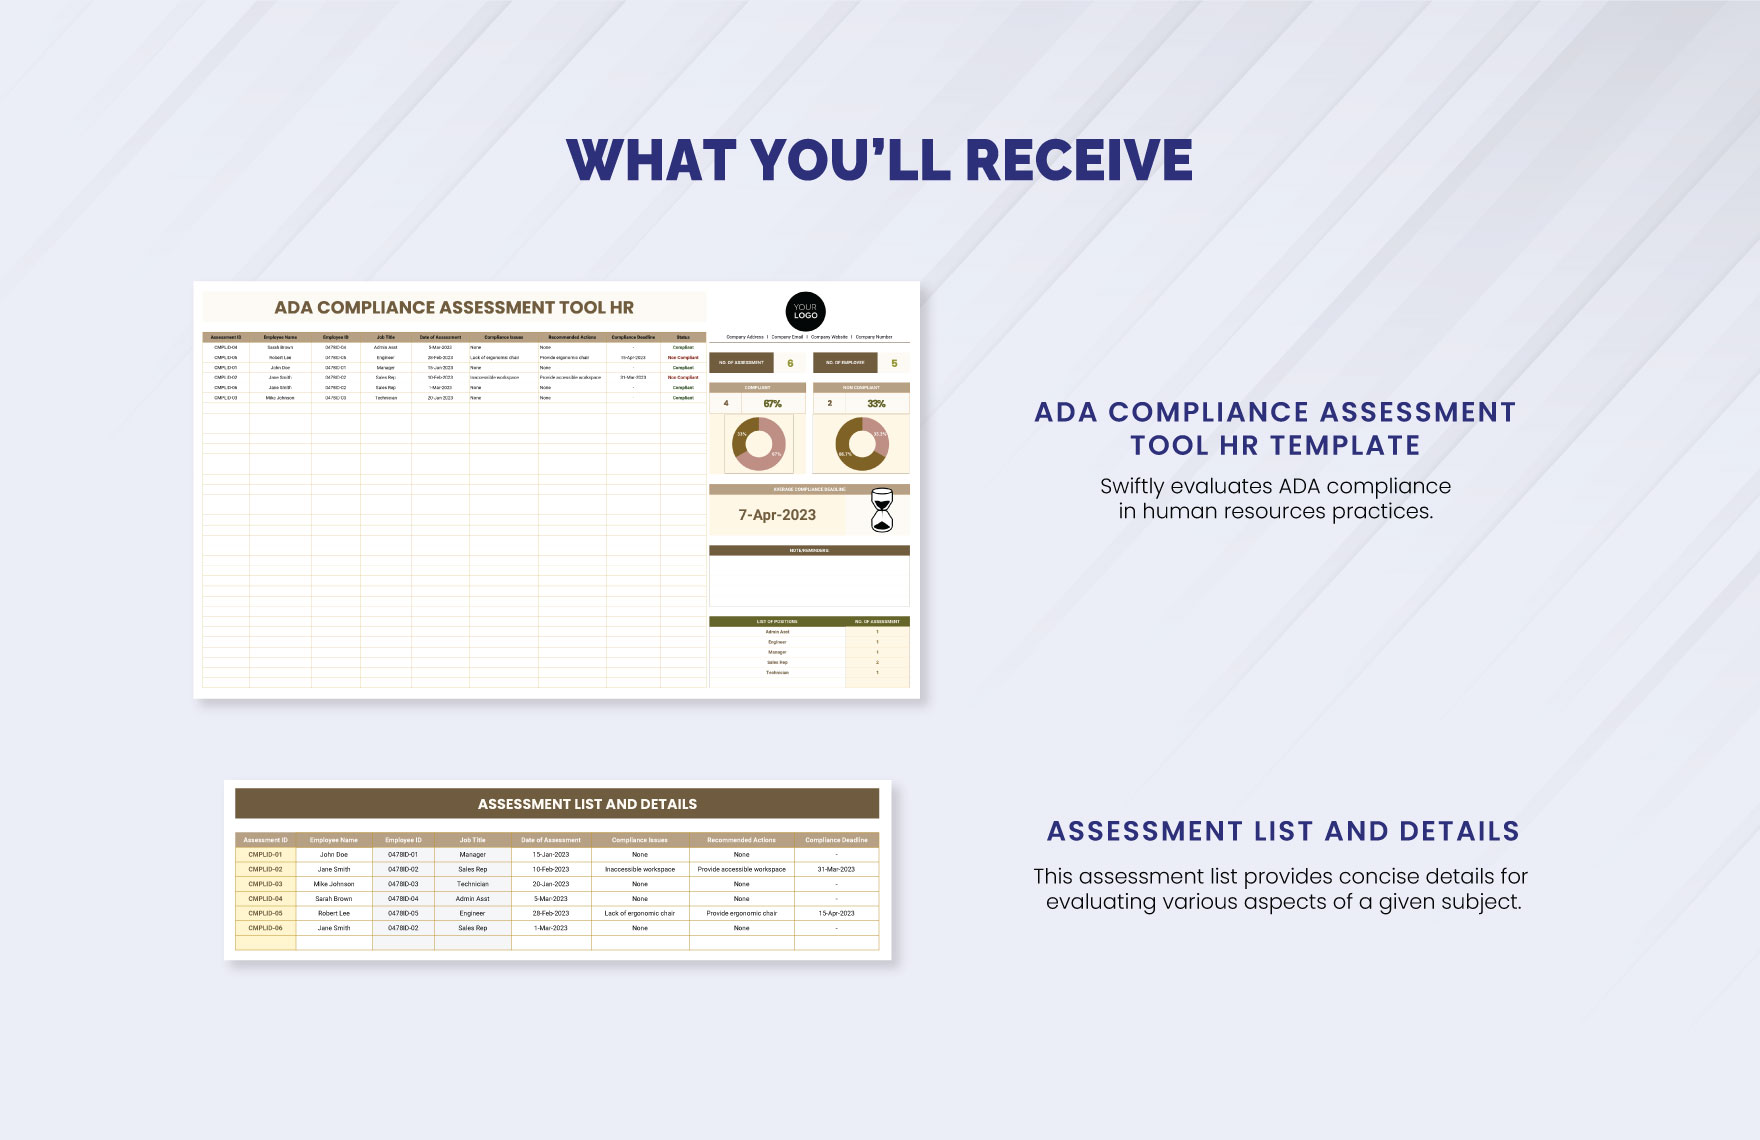 ADA Compliance Assessment Tool HR Template